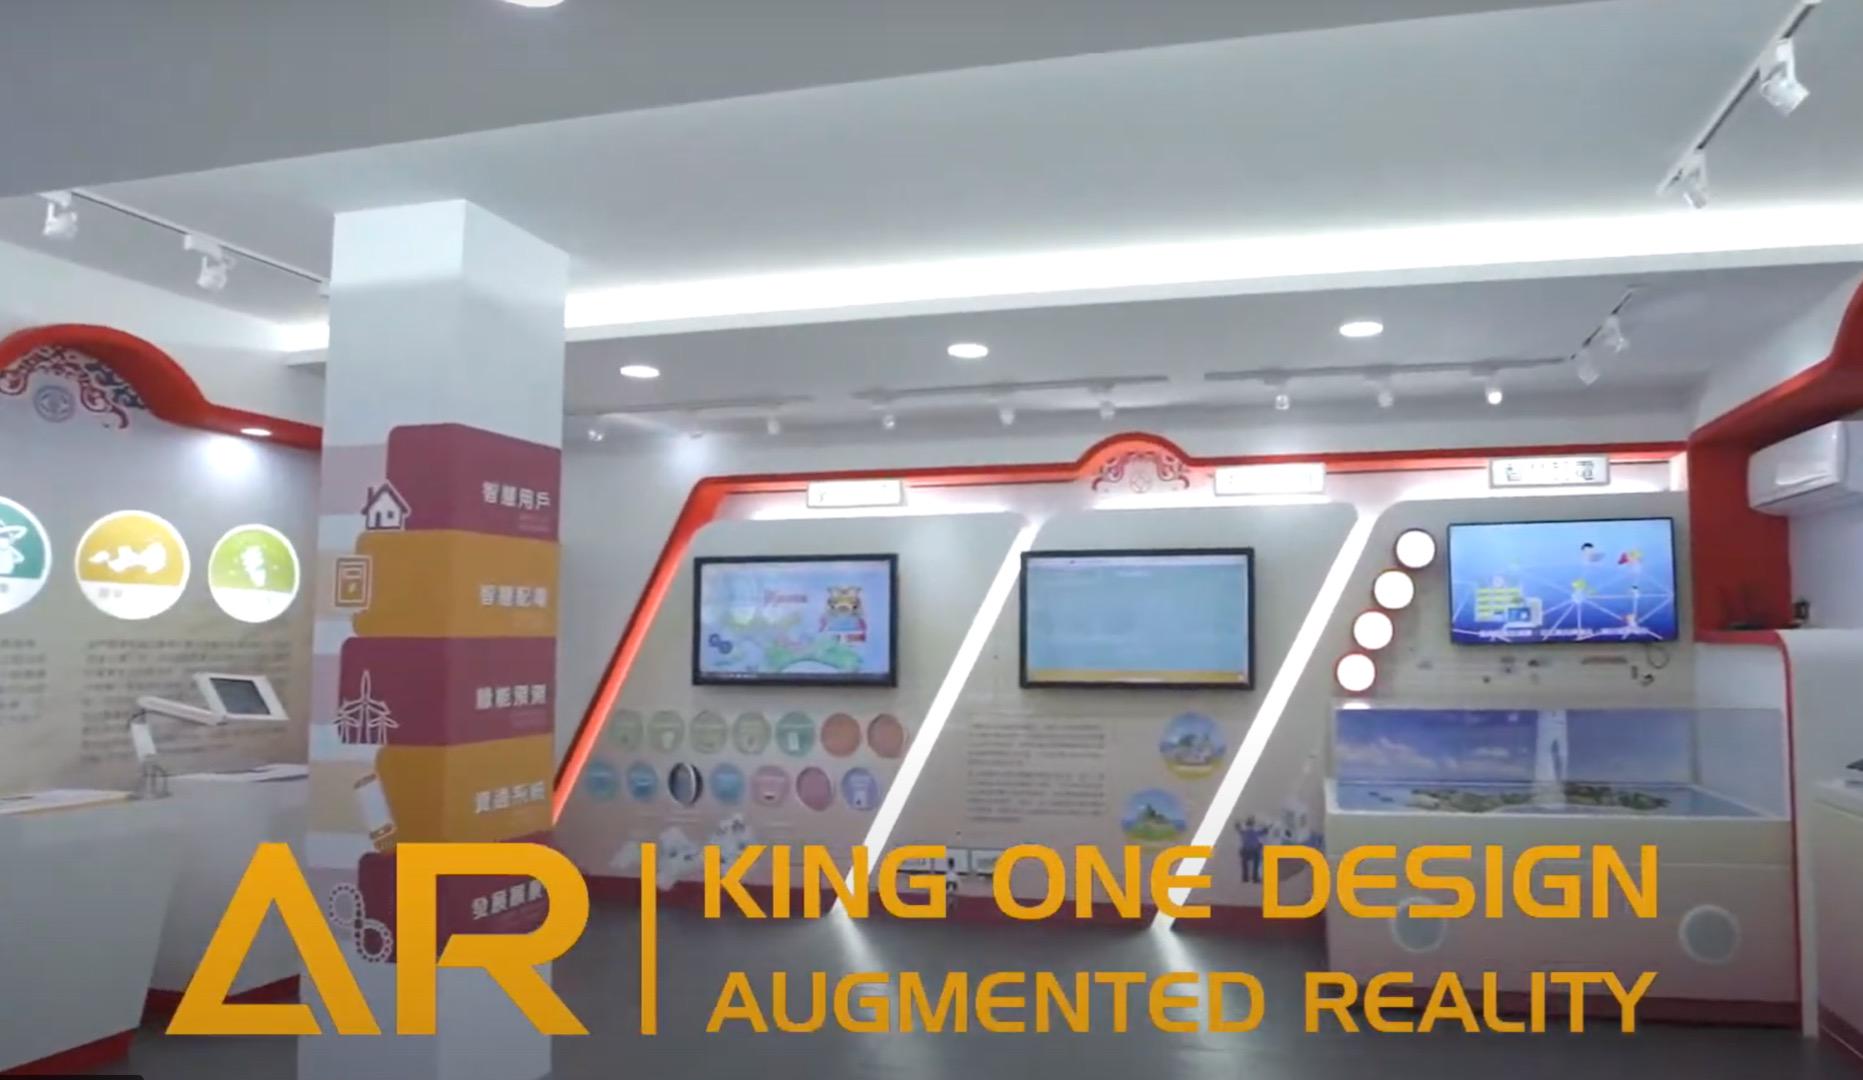 王一设计, king one, 台电, interactive art, 数位互动艺术, 体感游戏, 金门智慧电网